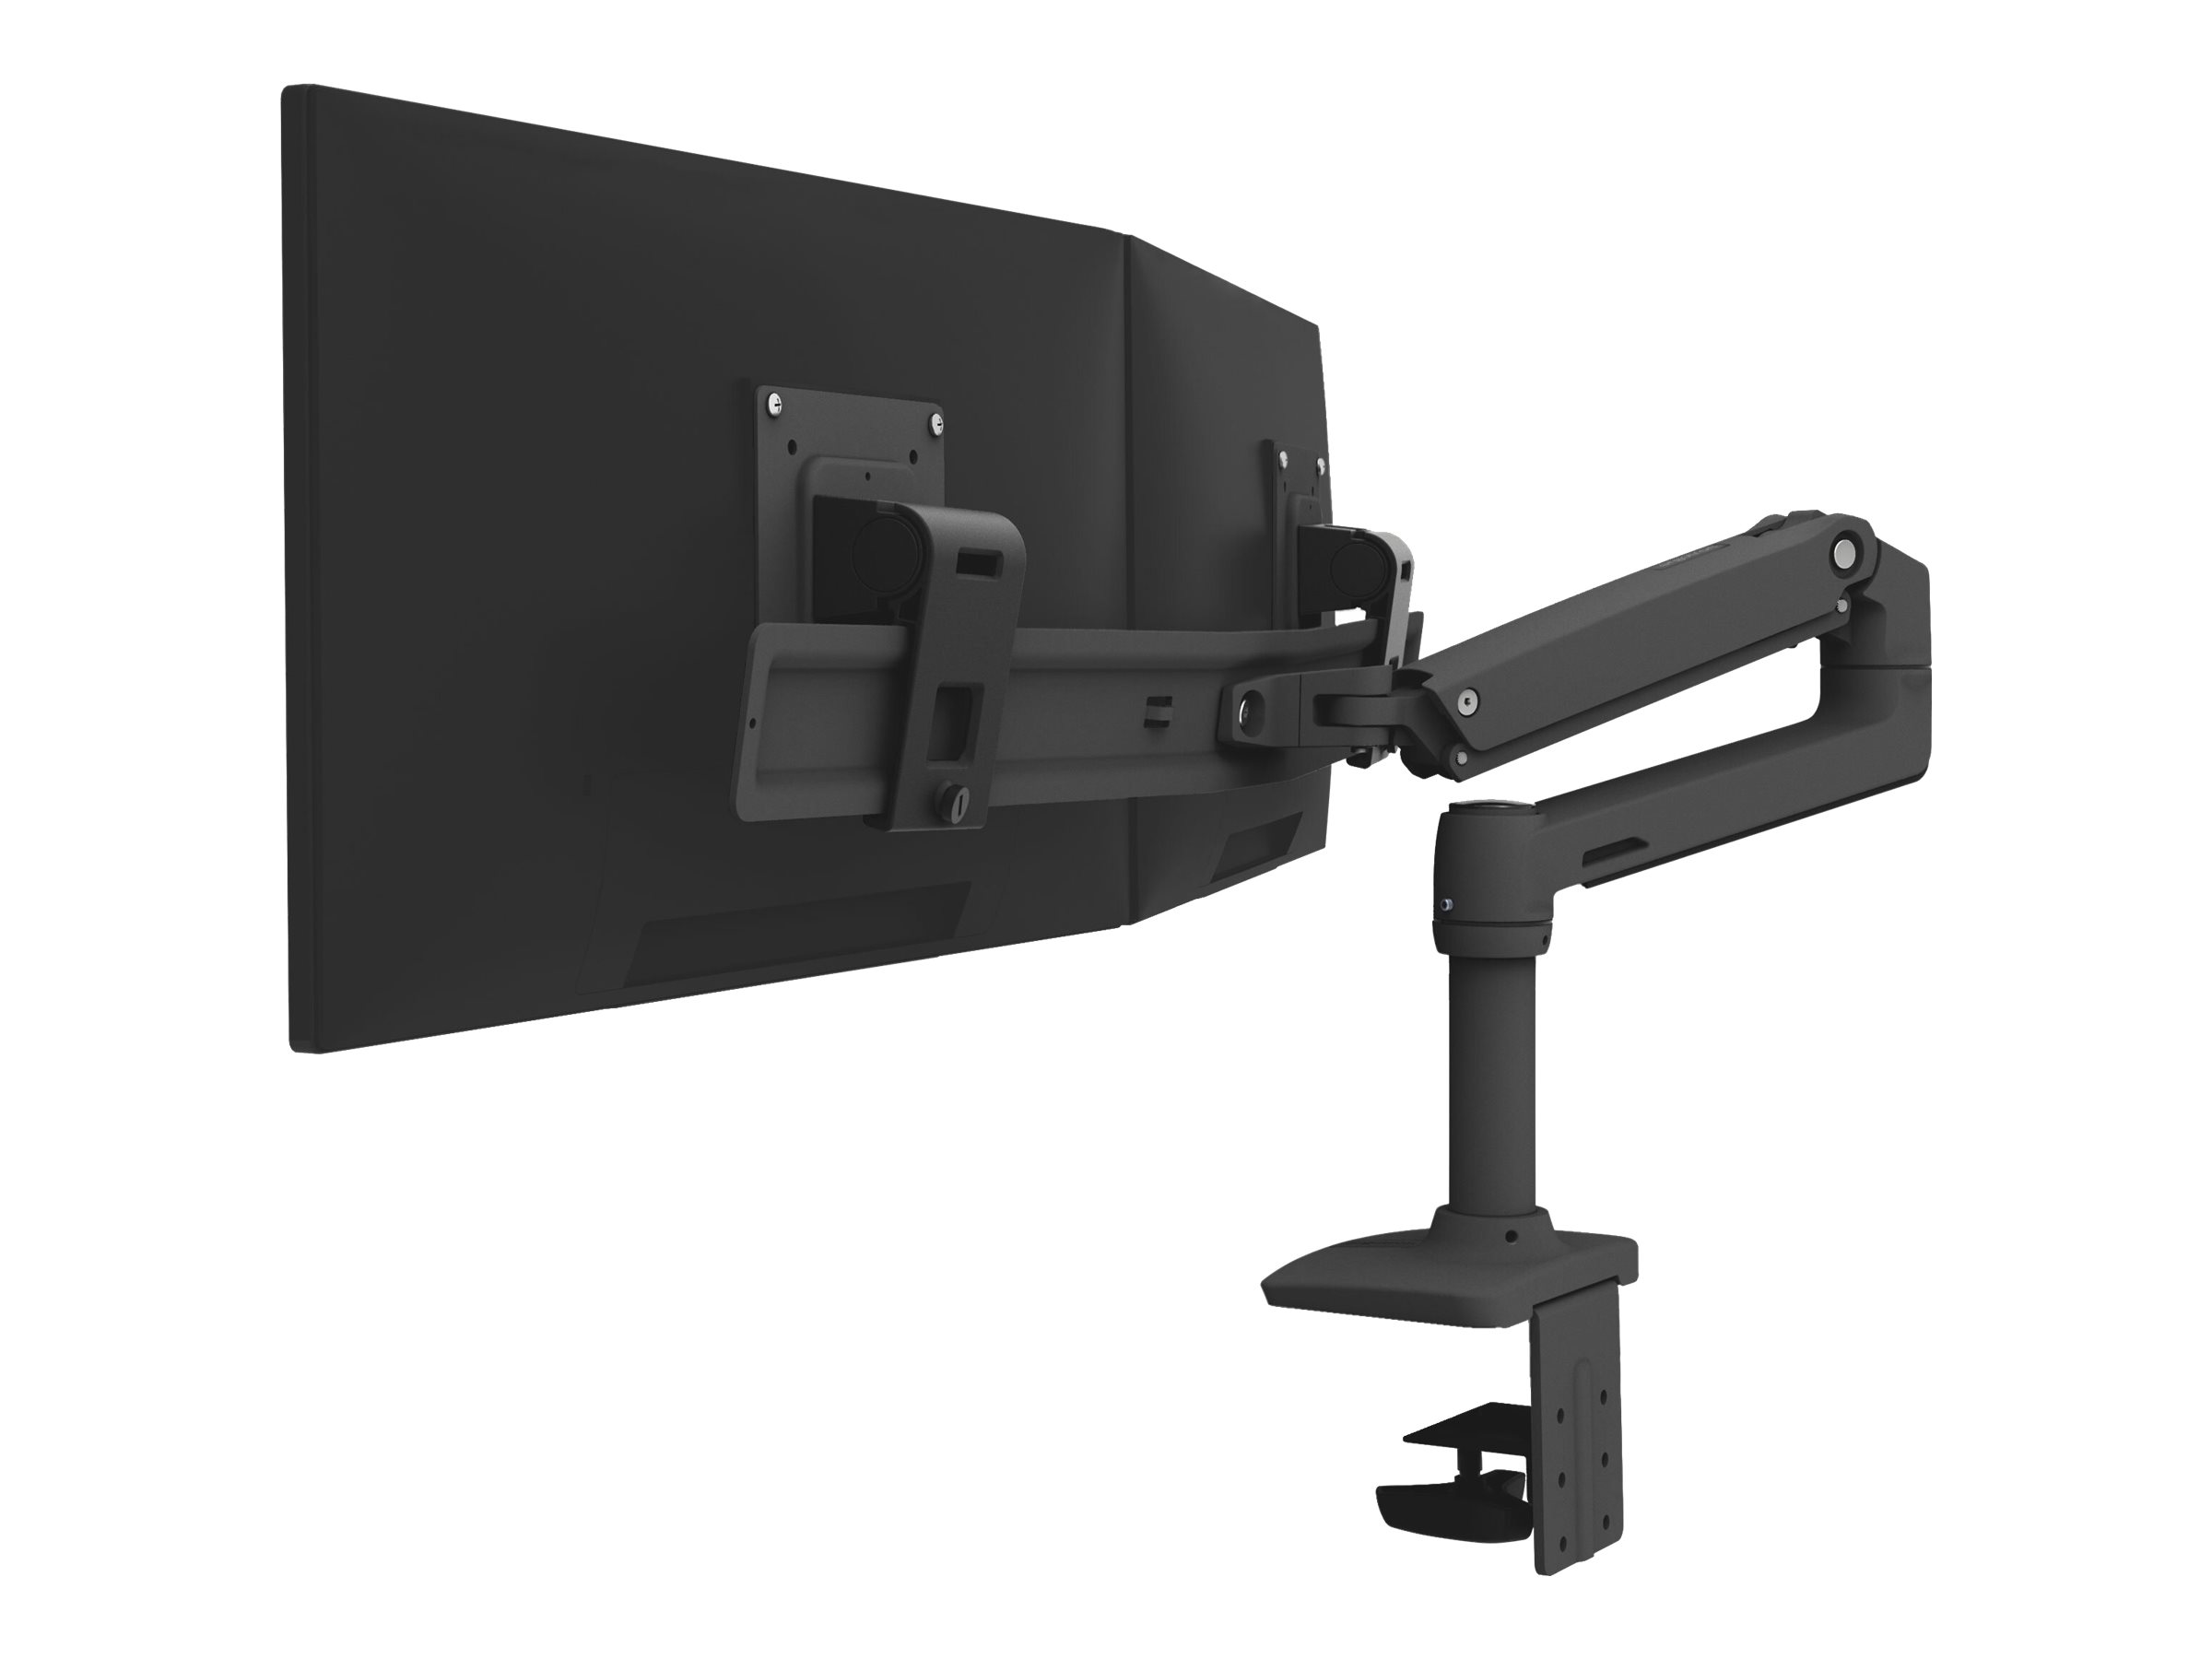 Ergotron LX - Befestigungskit (Gelenkarm, 2 Drehgelenke, Arm für zwei Bildschirme, Basis, 2-teilige Tischklemme, 8" Stange, Verlängerung) - für 2 LCD-Displays - dual direct - mattschwarz - Bildschirmgröße: bis zu 63,5 cm (bis zu 25 Zoll)